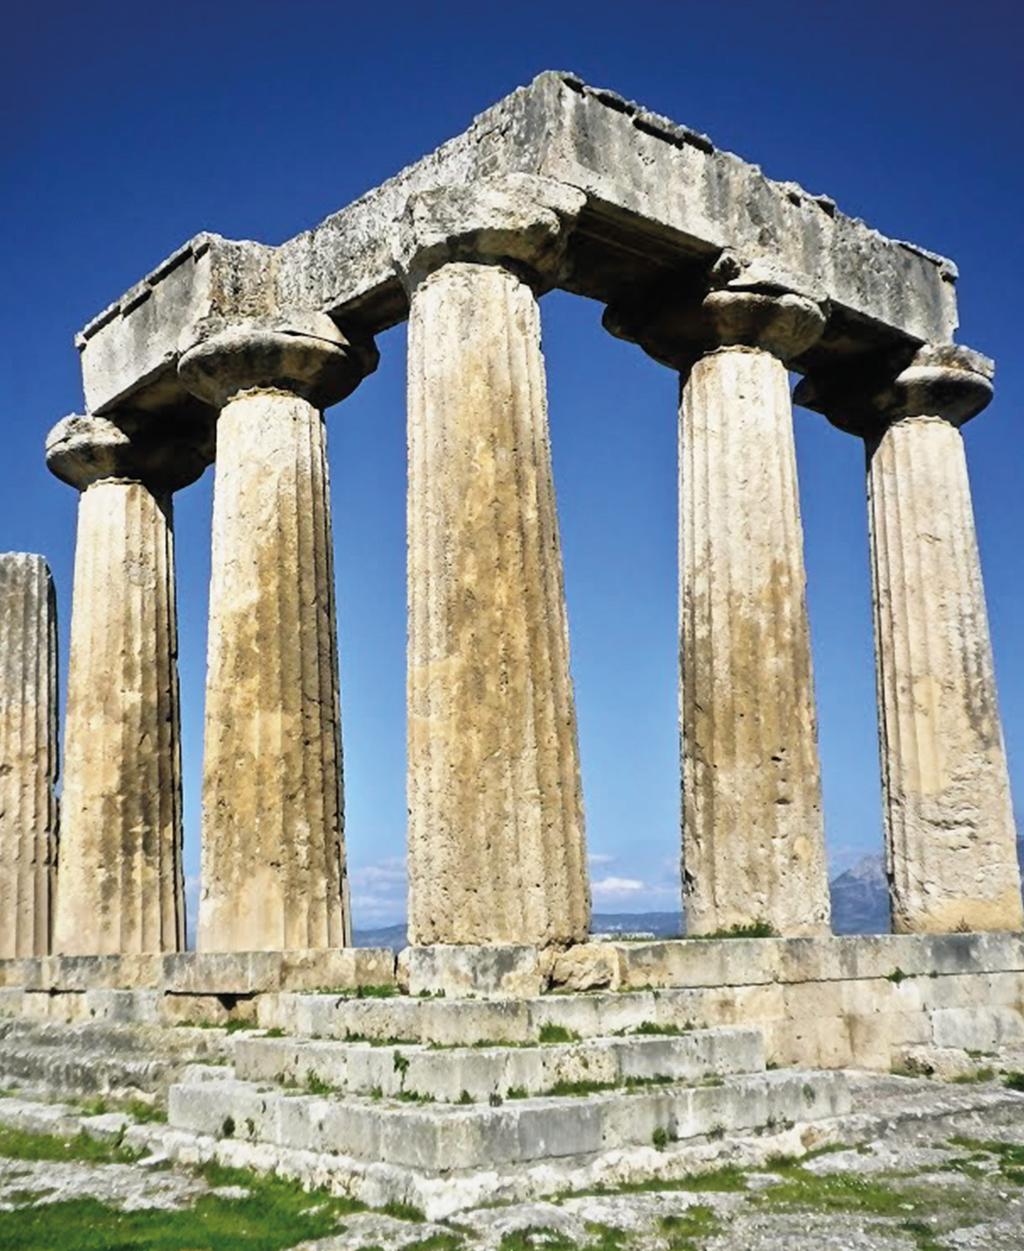 Ιστορικός προορισμός της Μεσογείου Η Κόρινθος είναι μια ιστορική πόλη που κατοικείται από το 5.500 π.χ. και ένας ιστορικός προορισμός της Μεσογείου.